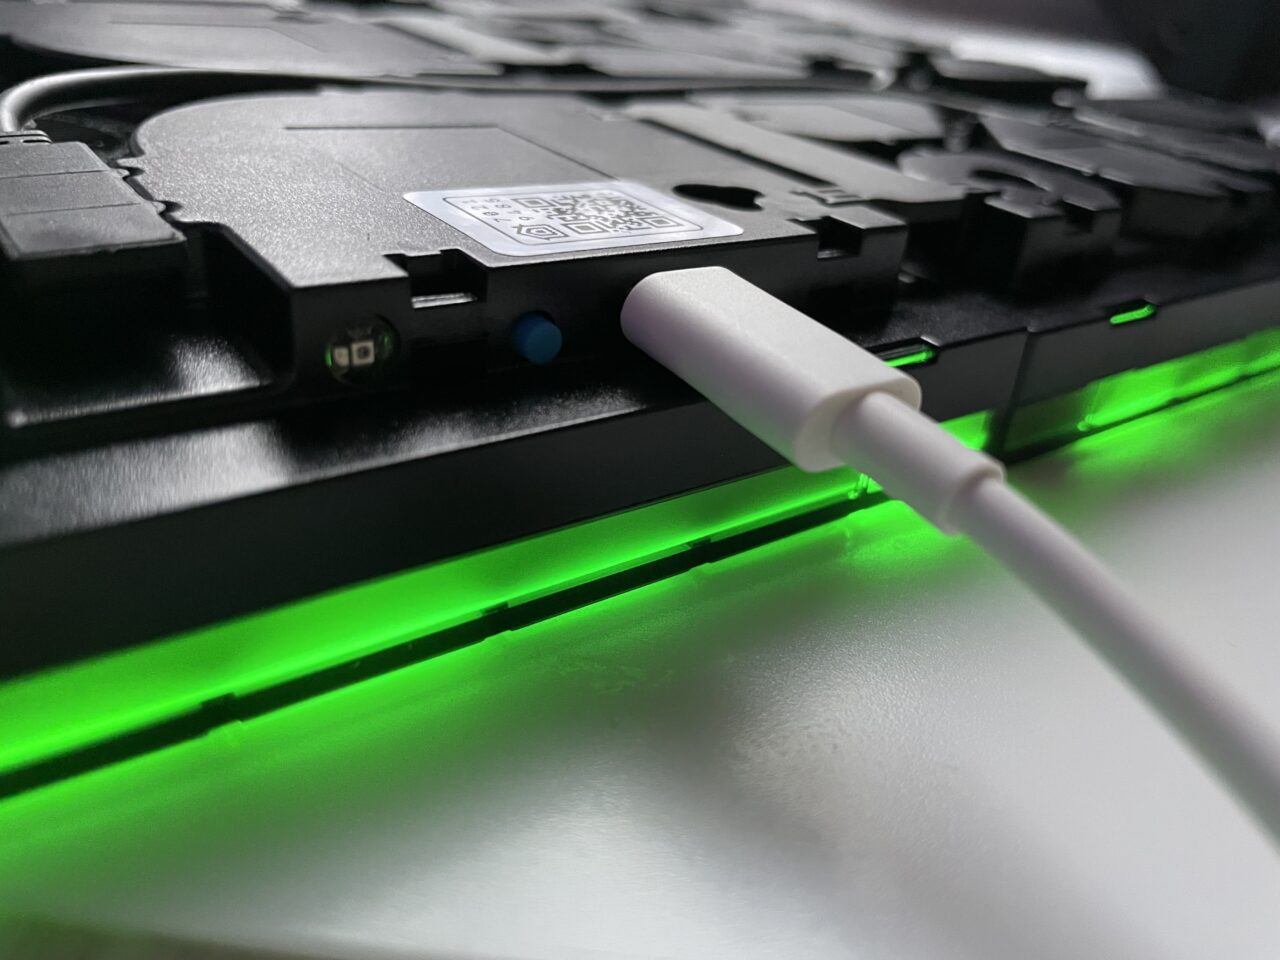 Częściowo otwarta czarna klawiatura laptopa z podświetleniem LED w odcieniu zielonym oraz białym kablem ładowania podłączonym do boku.